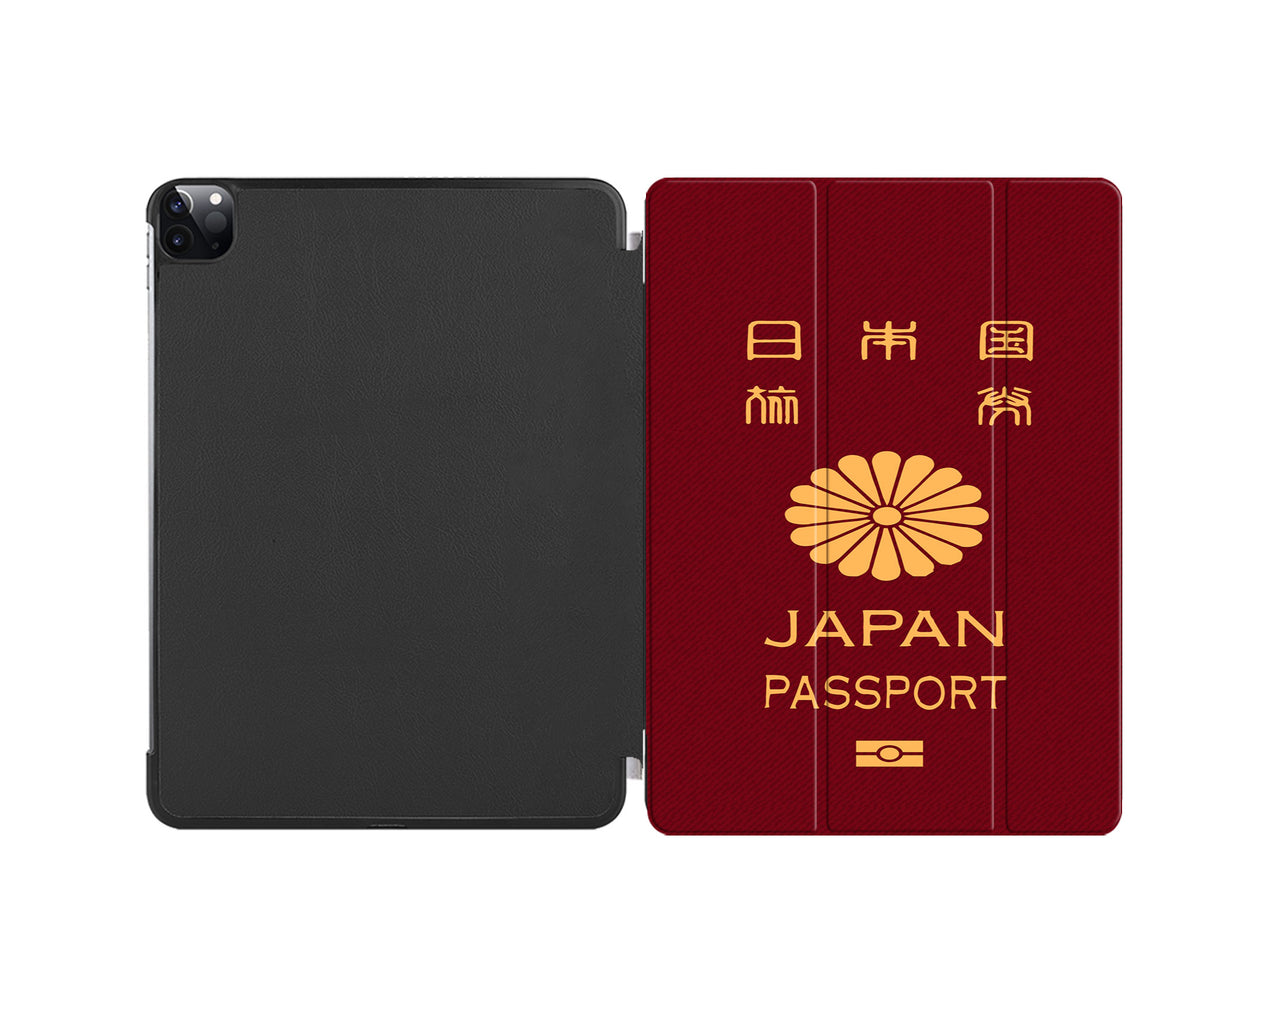 Japan Passport Designed iPad Cases